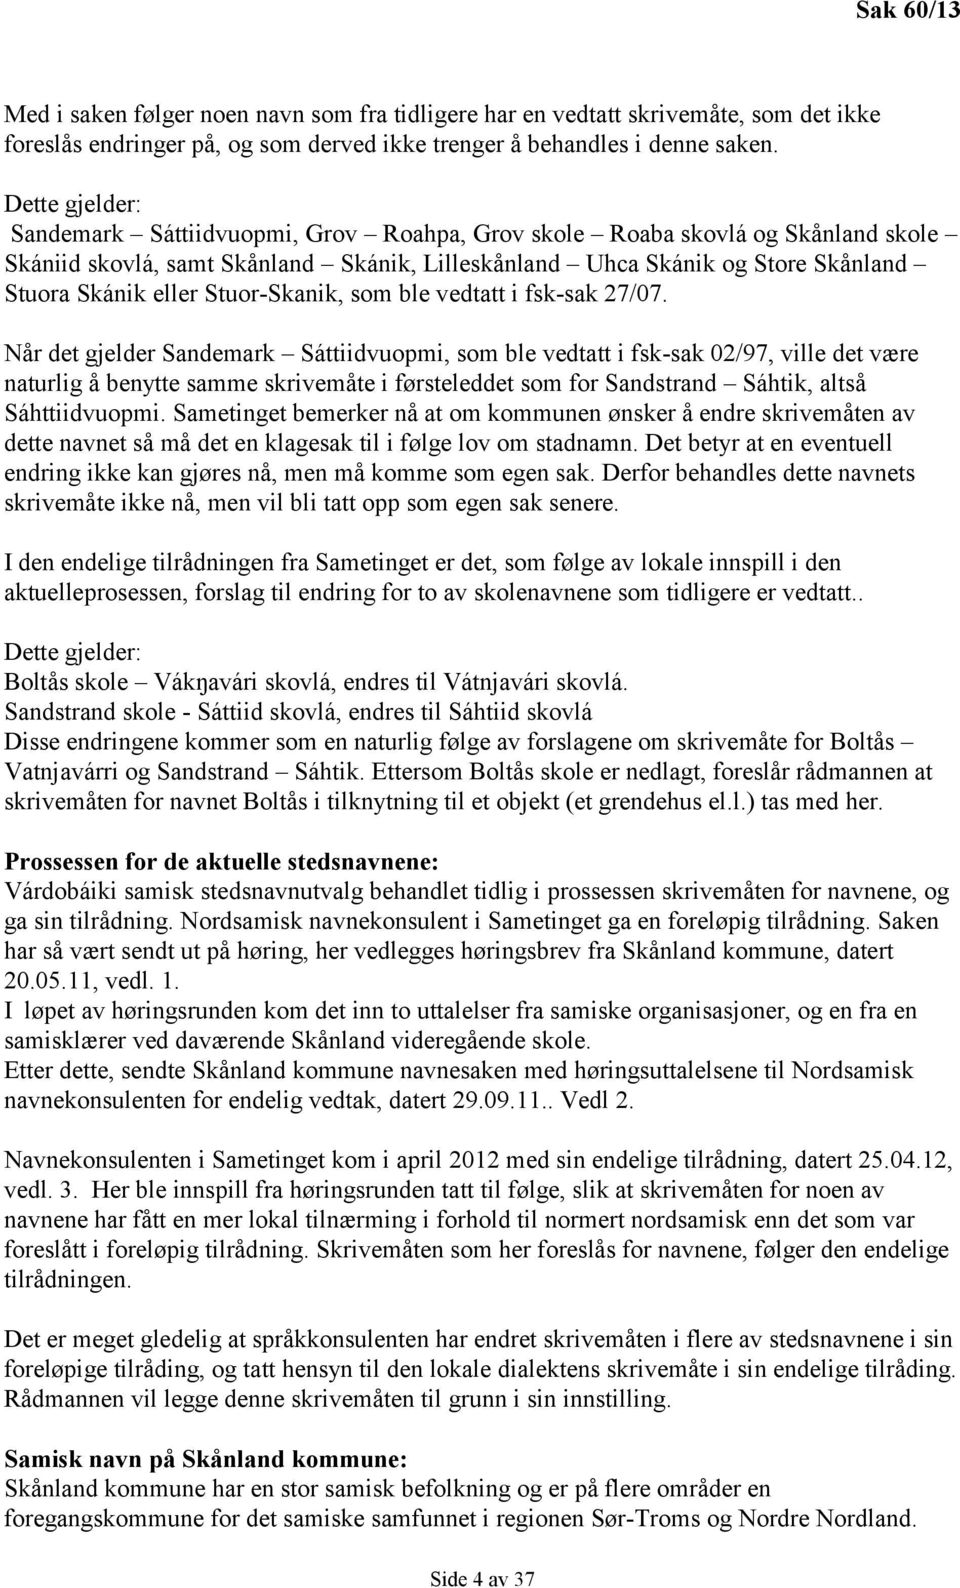 Stuor-Skanik, som ble vedtatt i fsk-sak 27/07.